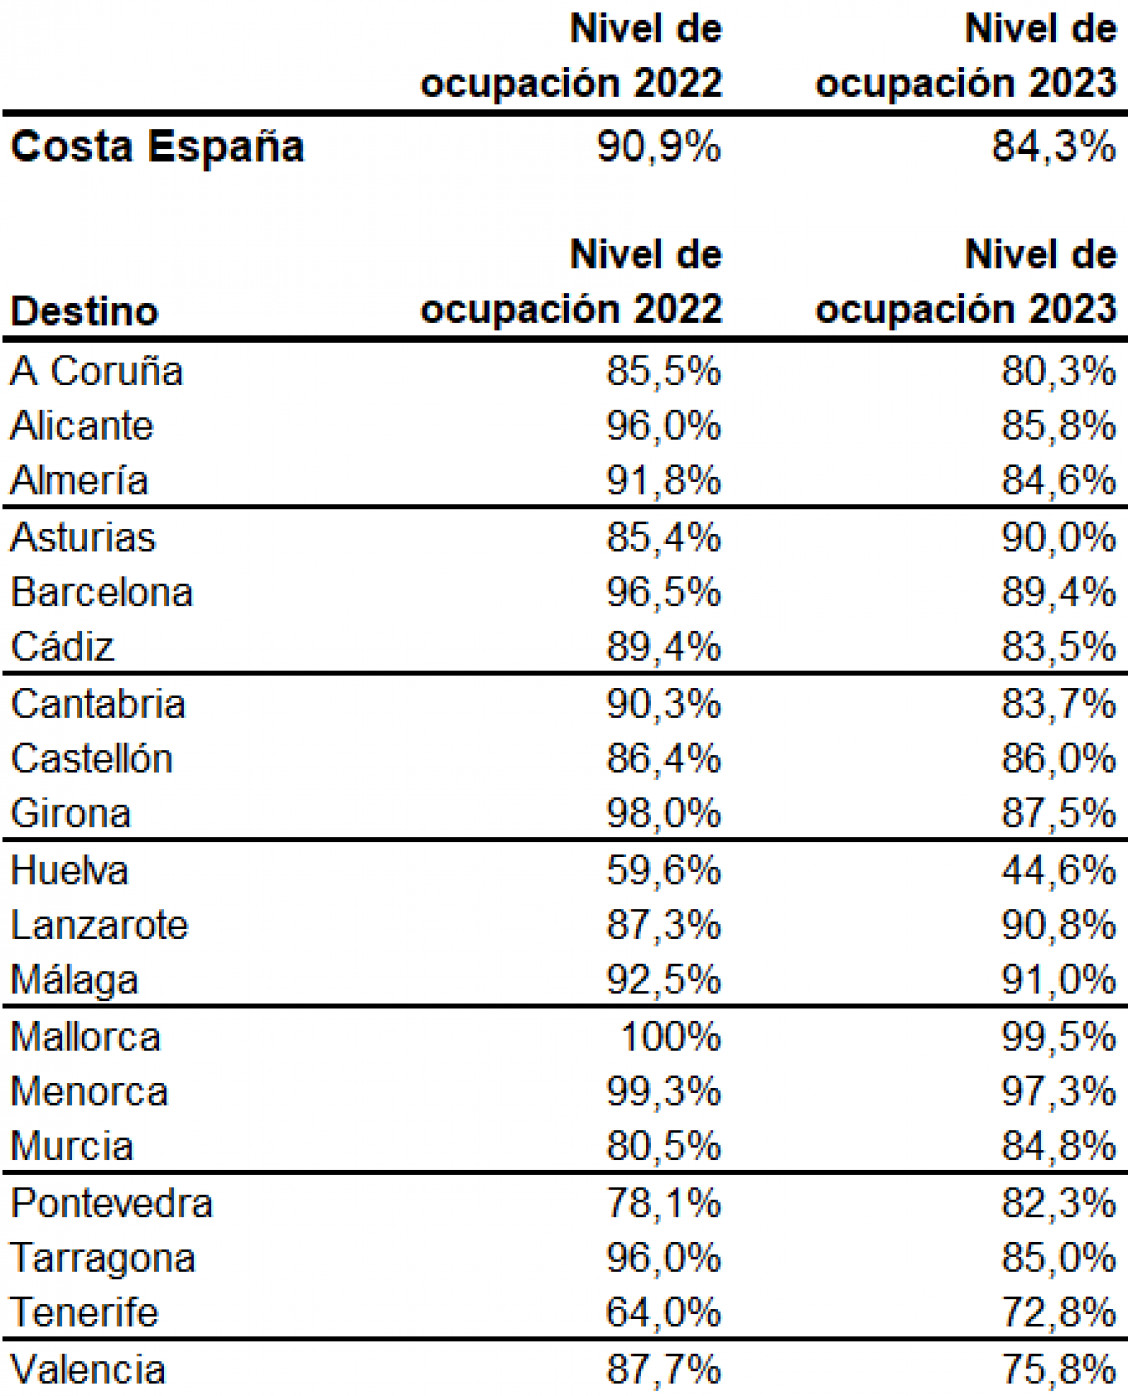 La ocupación en viviendas turísticas cae casi siete puntos en agosto